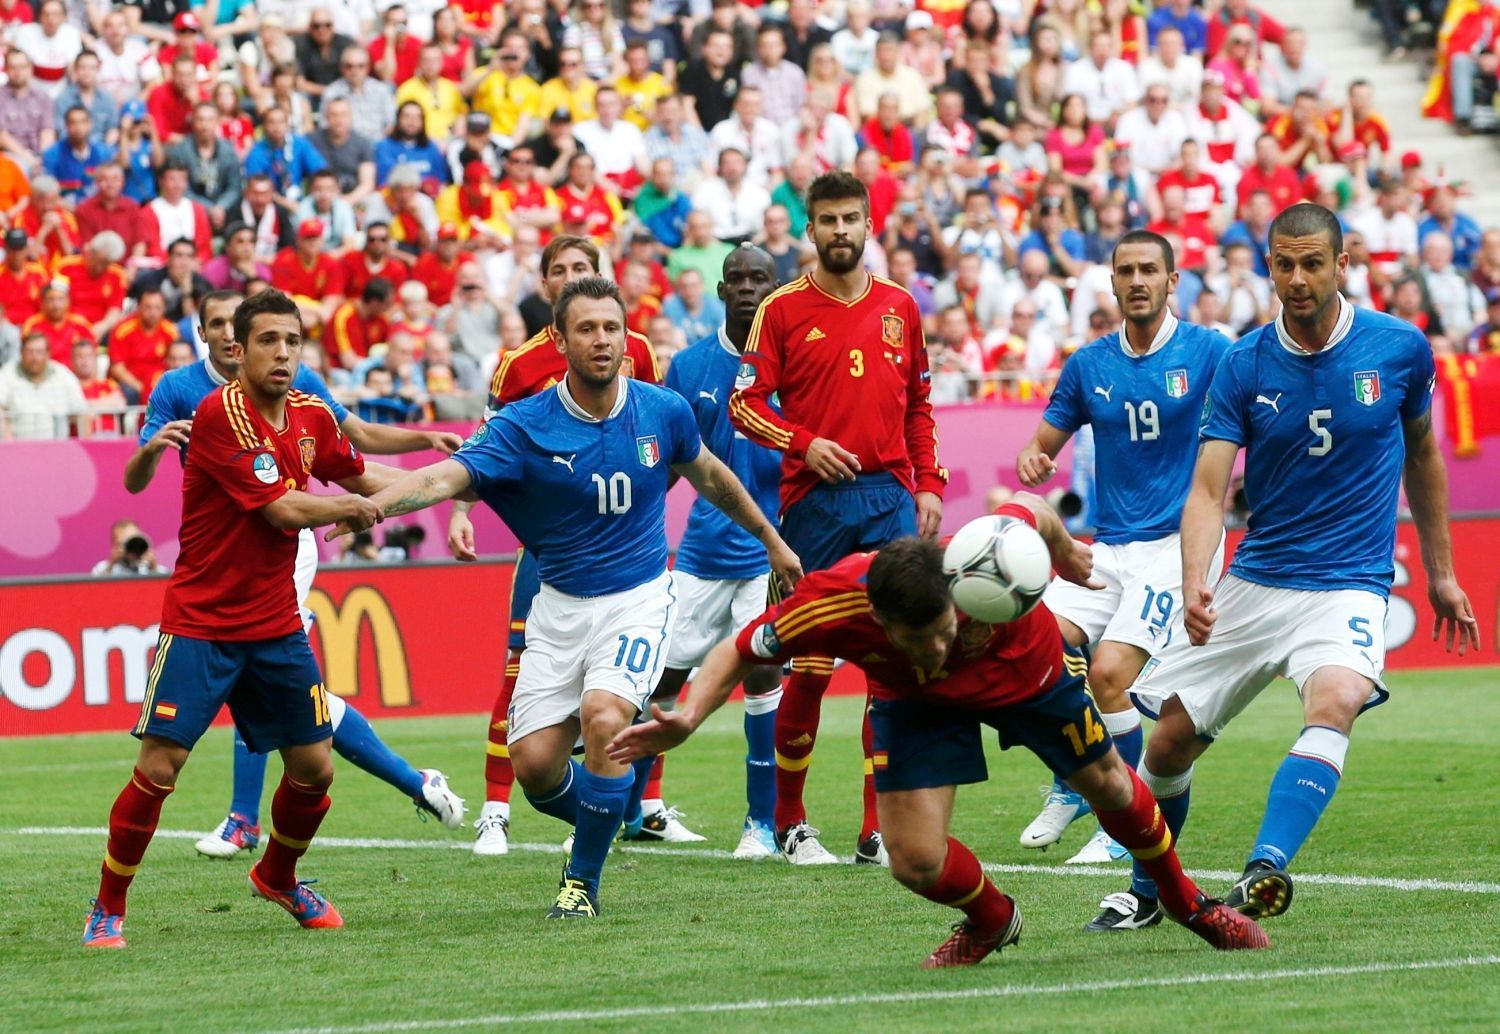 Xabi Alonso v utkání základní skupiny mezi Španělskem a Itálií na Euru 2012